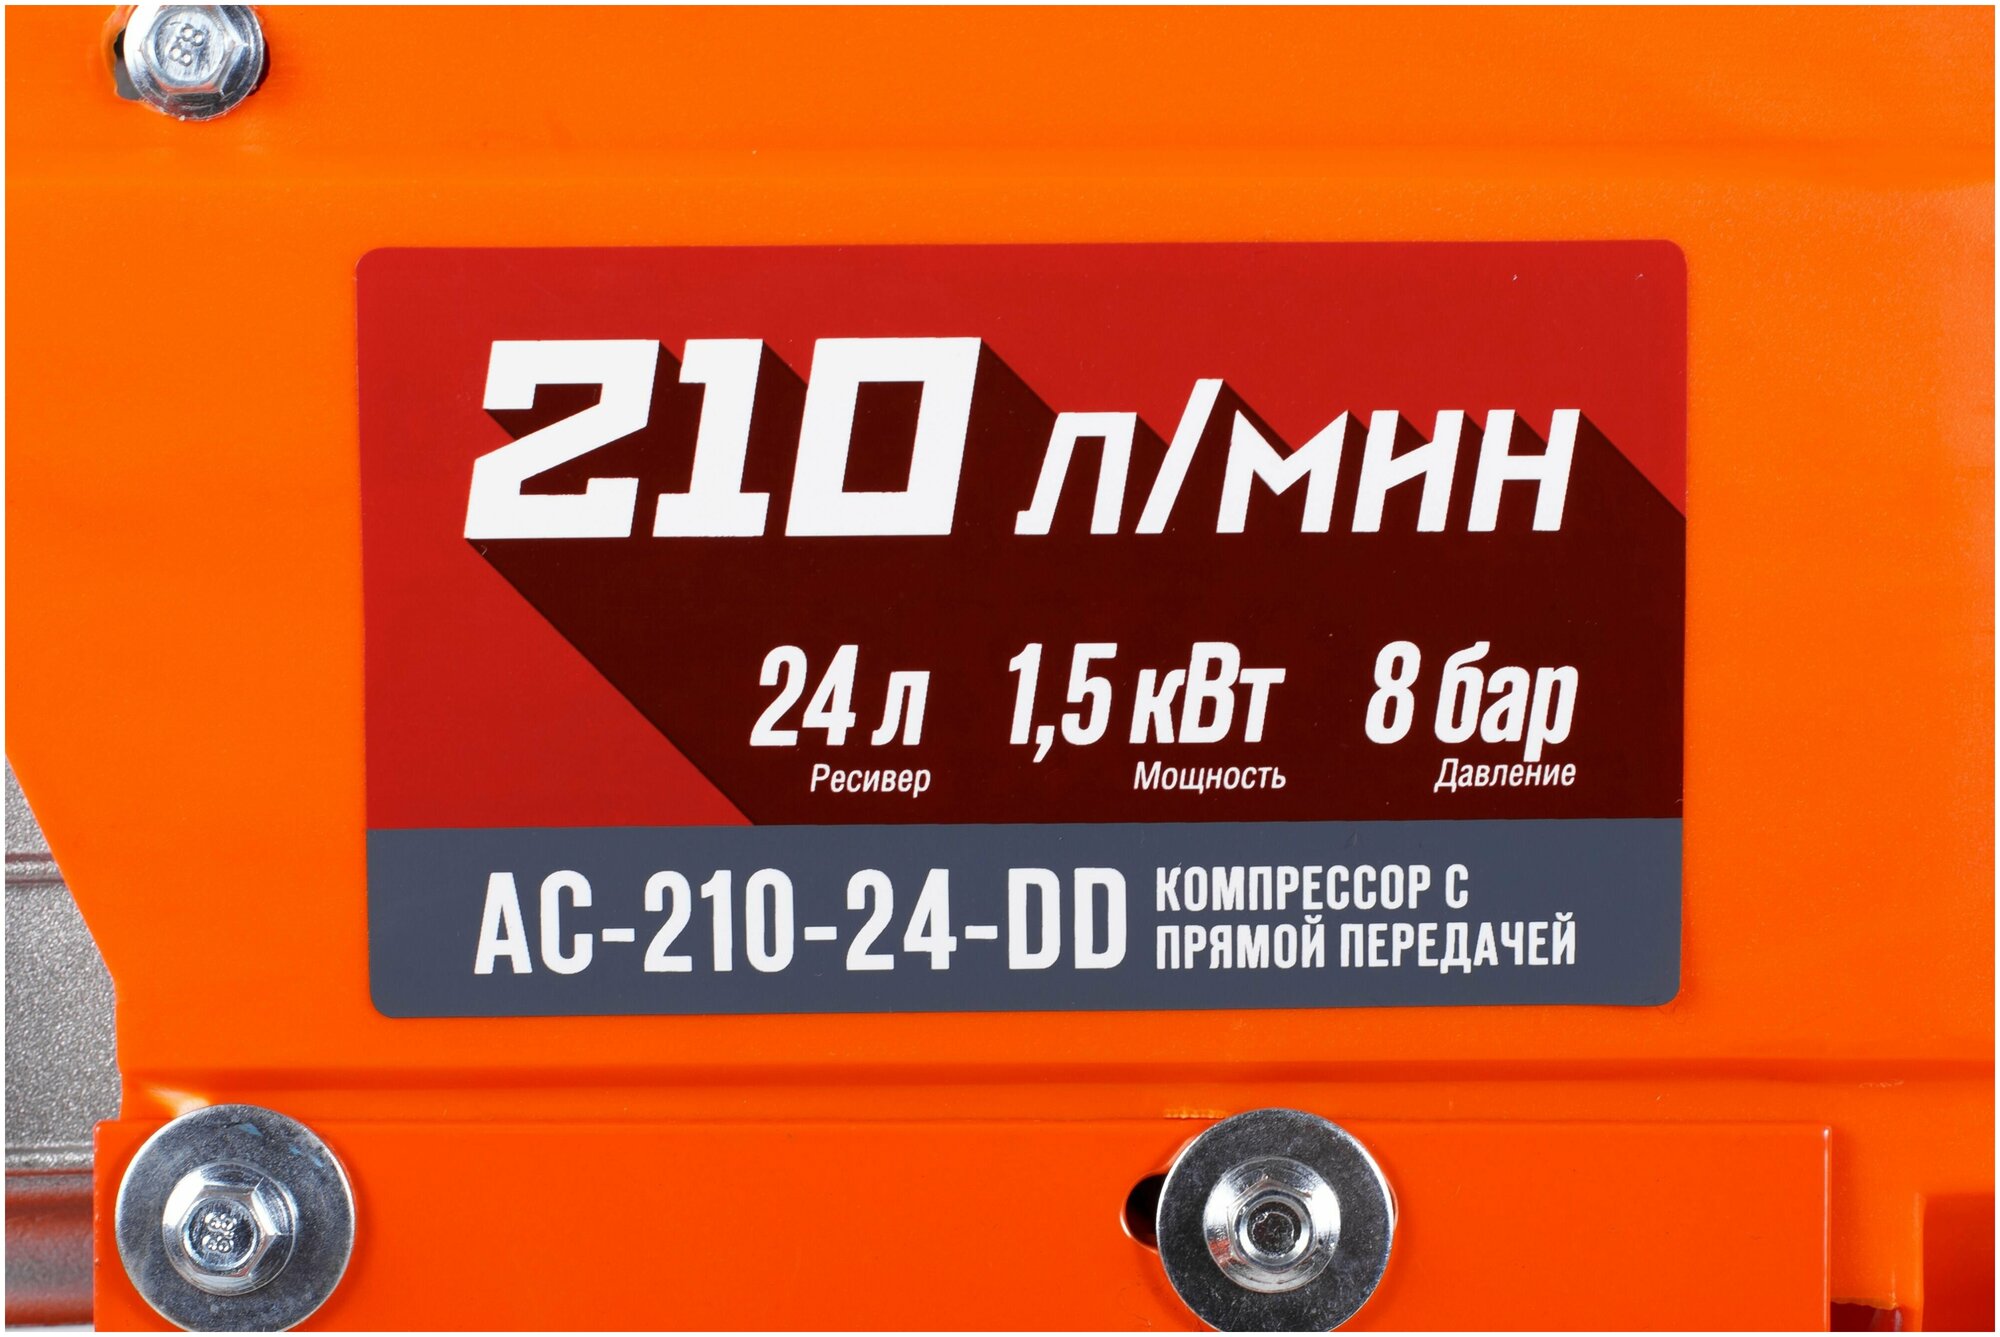 Компрессор масляный Кратон АС-210-24-DD